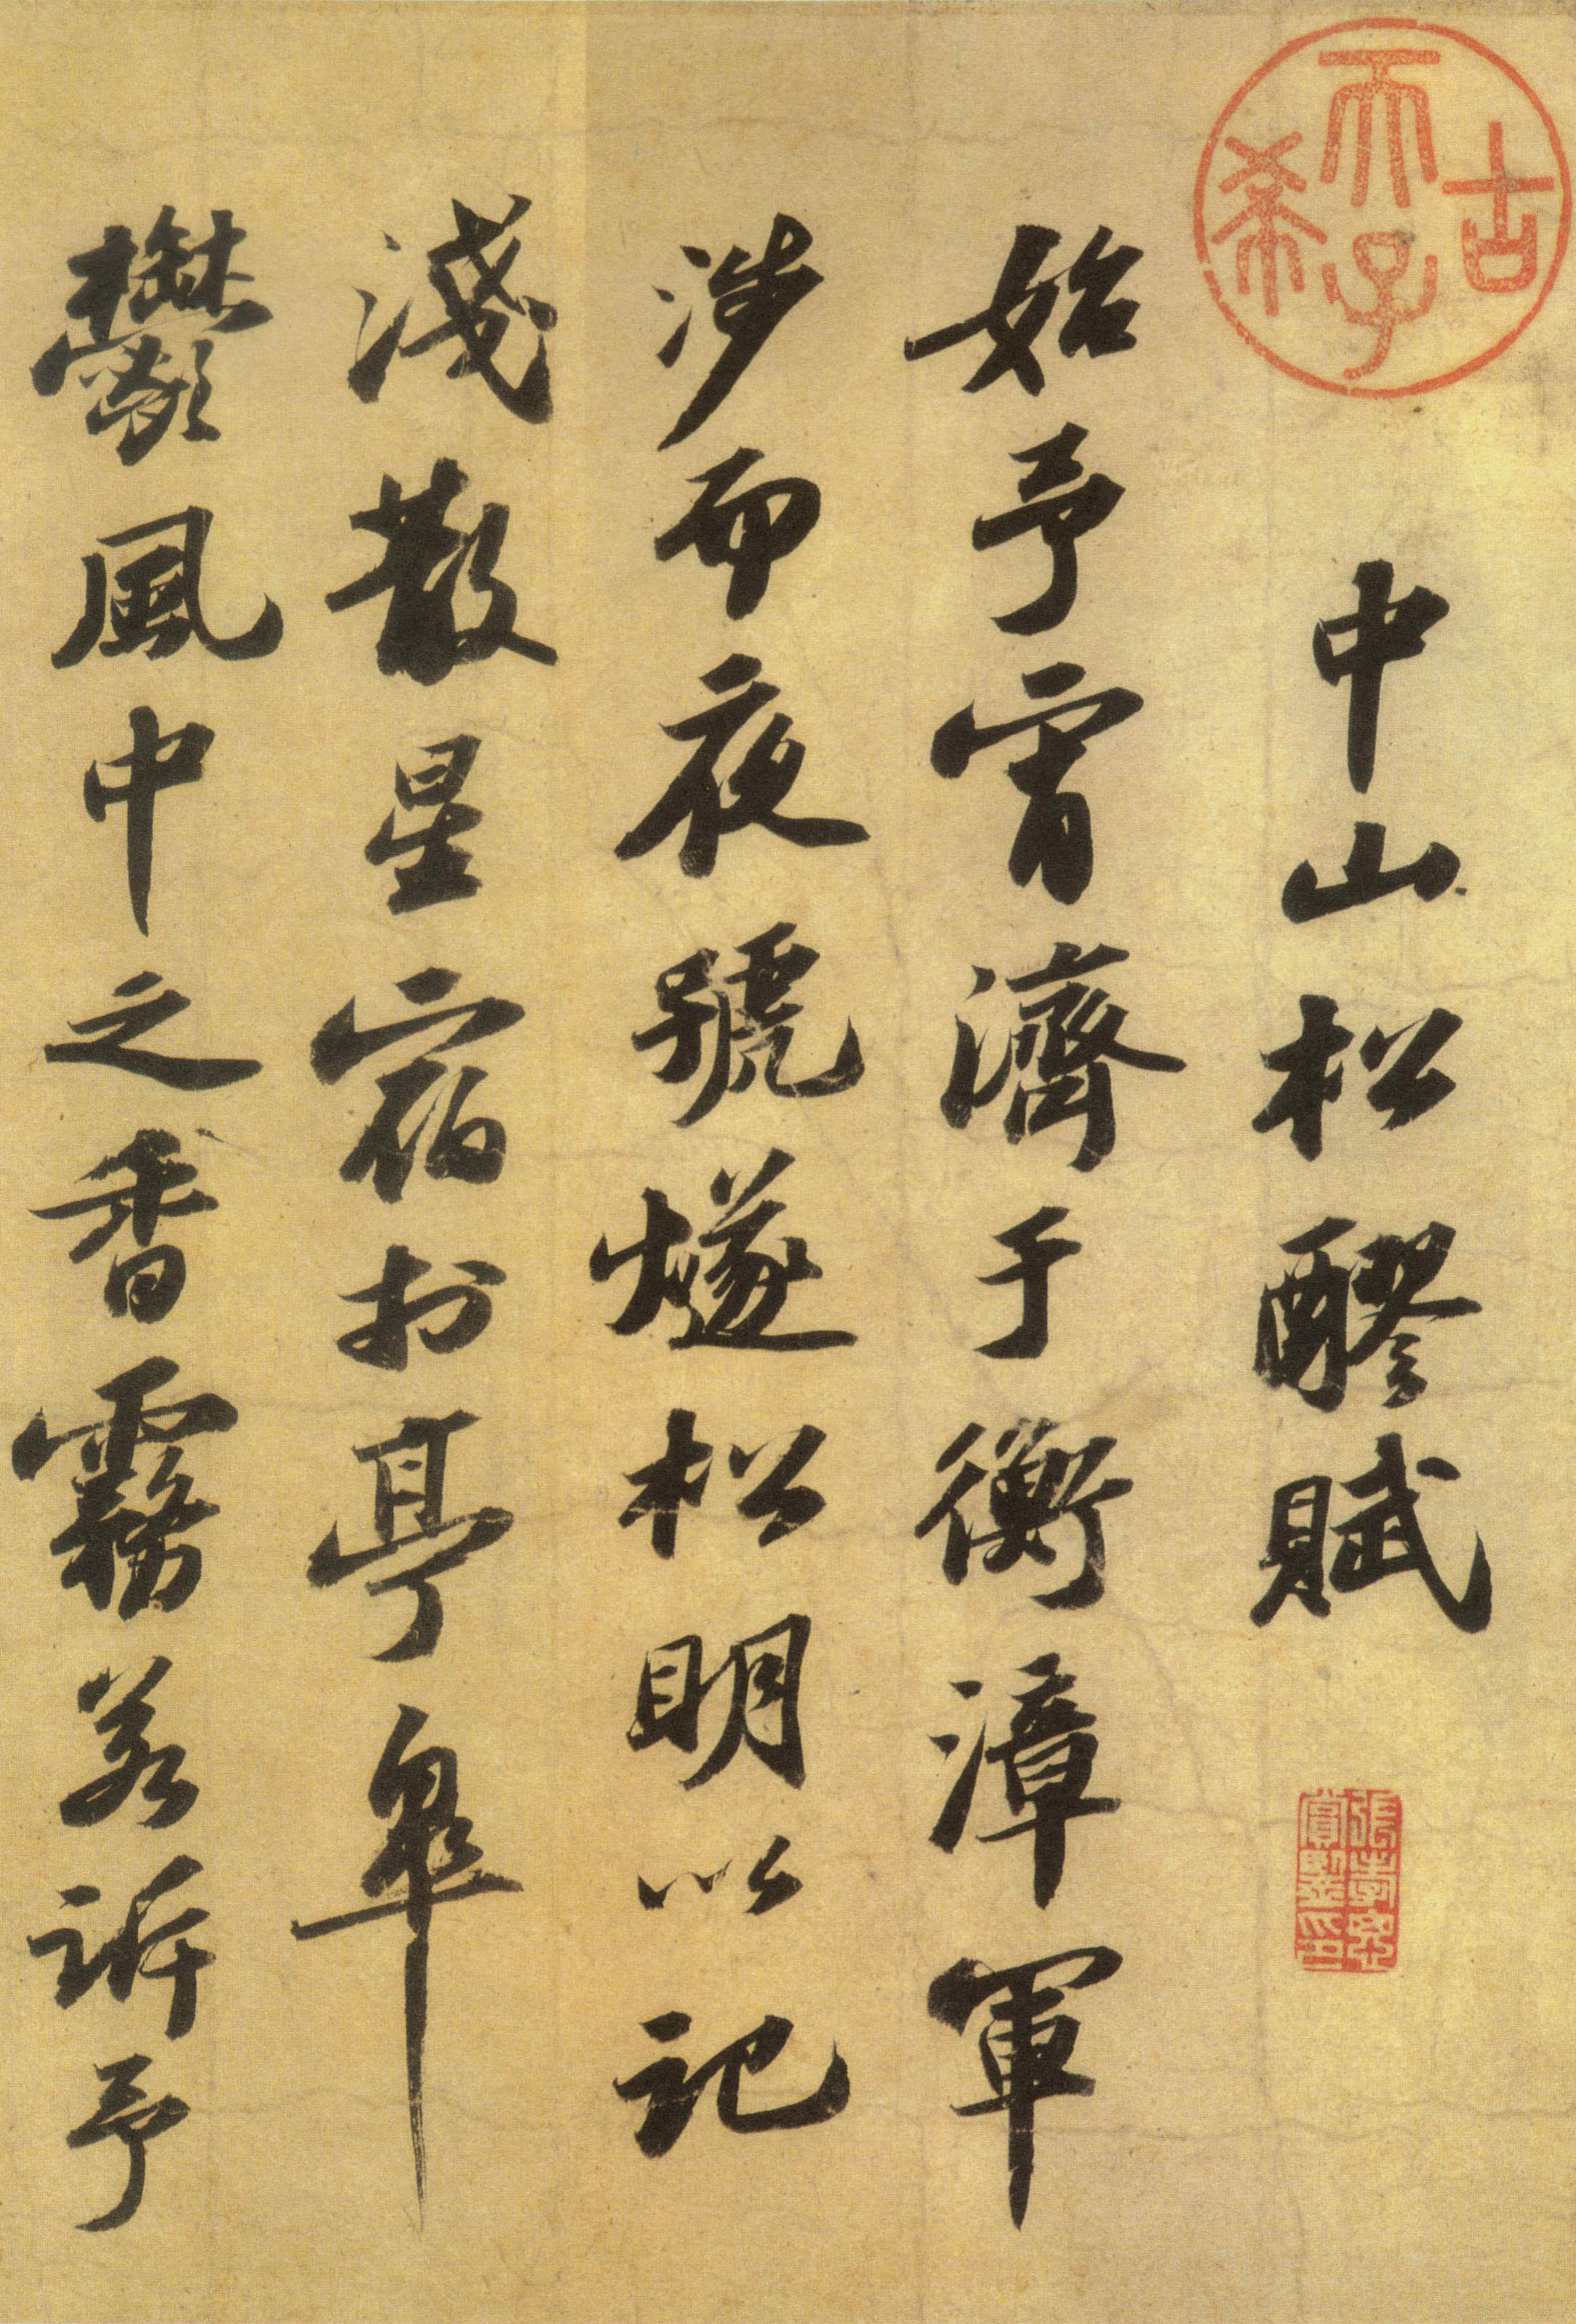 苏轼《洞庭春色赋》与《中山松醪赋》合卷-吉林省博物馆藏（分段欣赏）(图8)